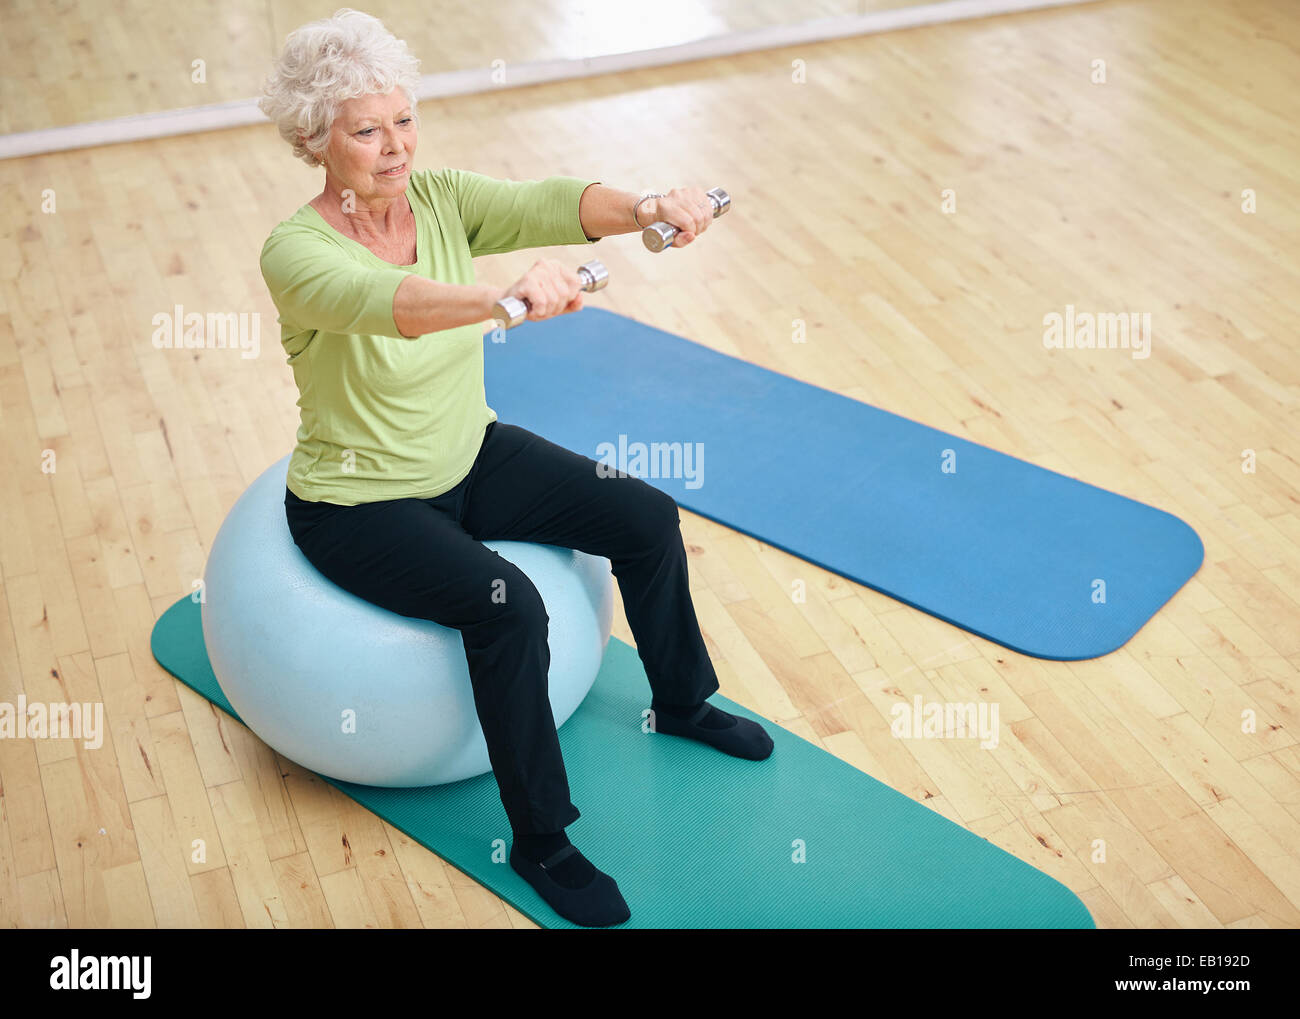 Jefa sentada sobre una pelota de gimnasia y levantamiento de pesas. Anciana el ejercicio con pesas en el gimnasio. Foto de stock